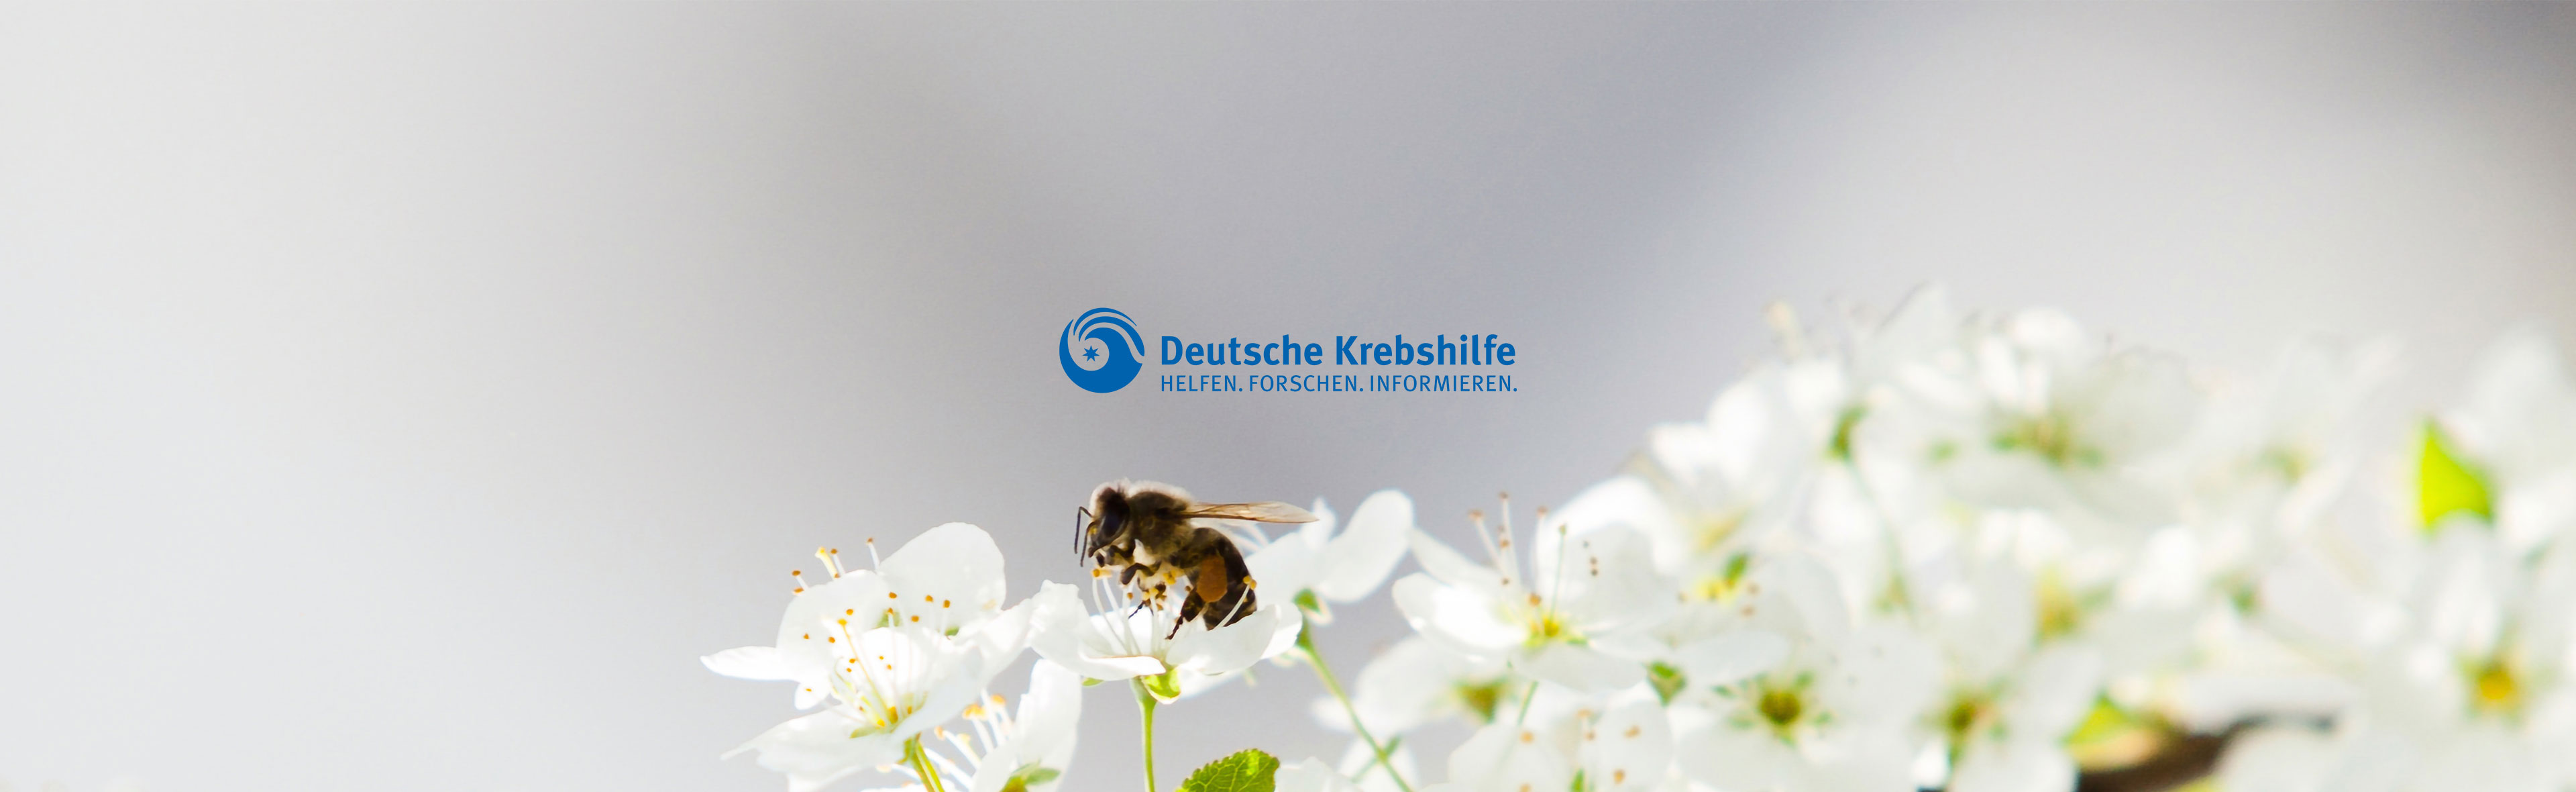 Bienenpatenschaft Deutsche Krebshilfe